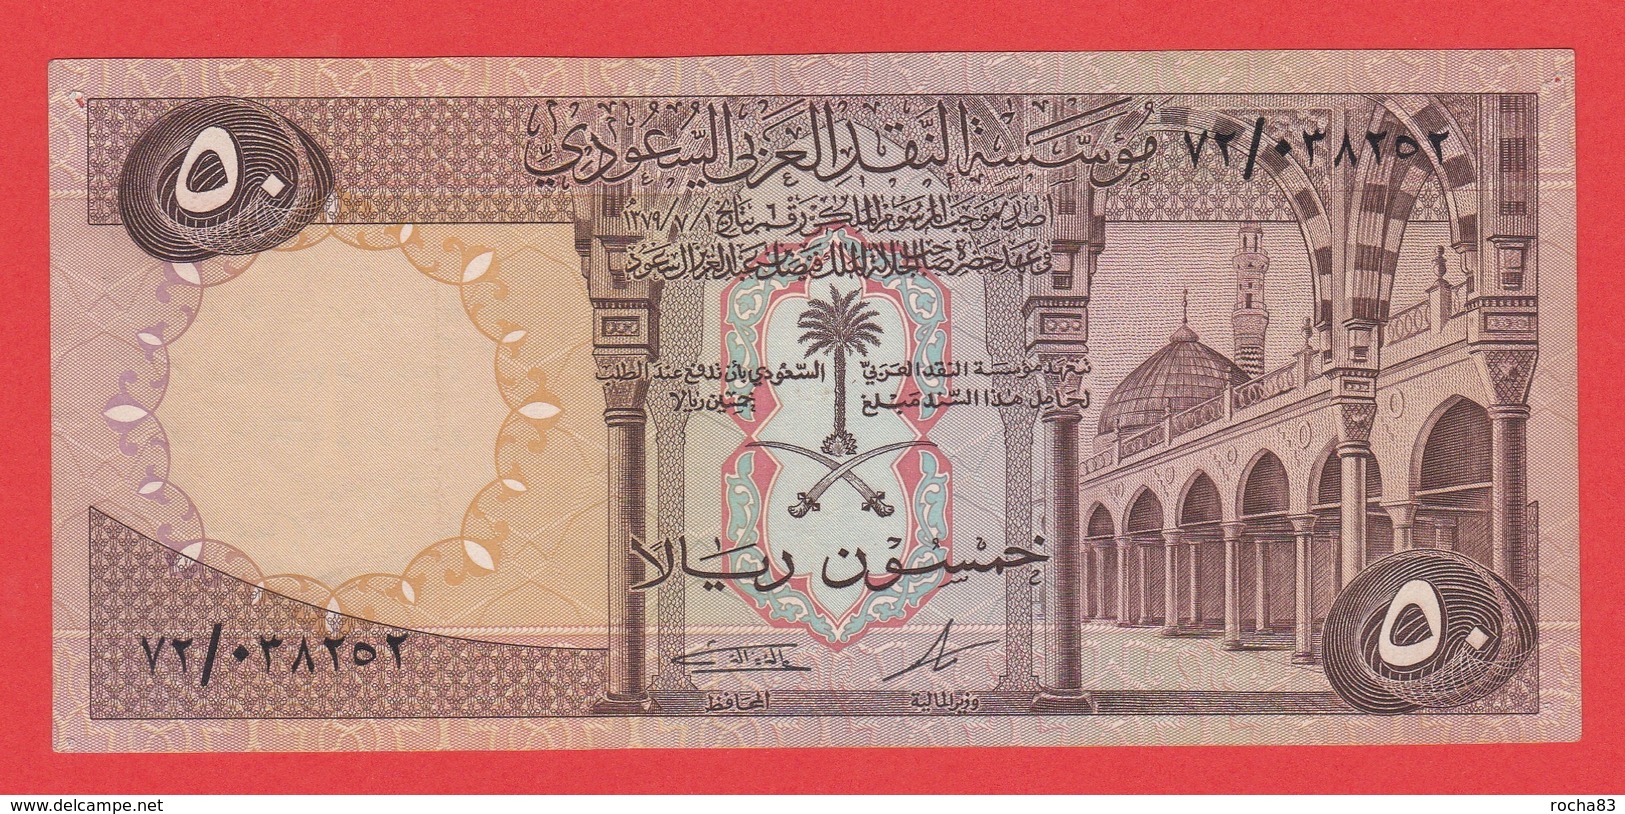 BILLET - ARABIE SAOUDI - 50 Riyals 1984  Pick 14b Rare - Saudi Arabia